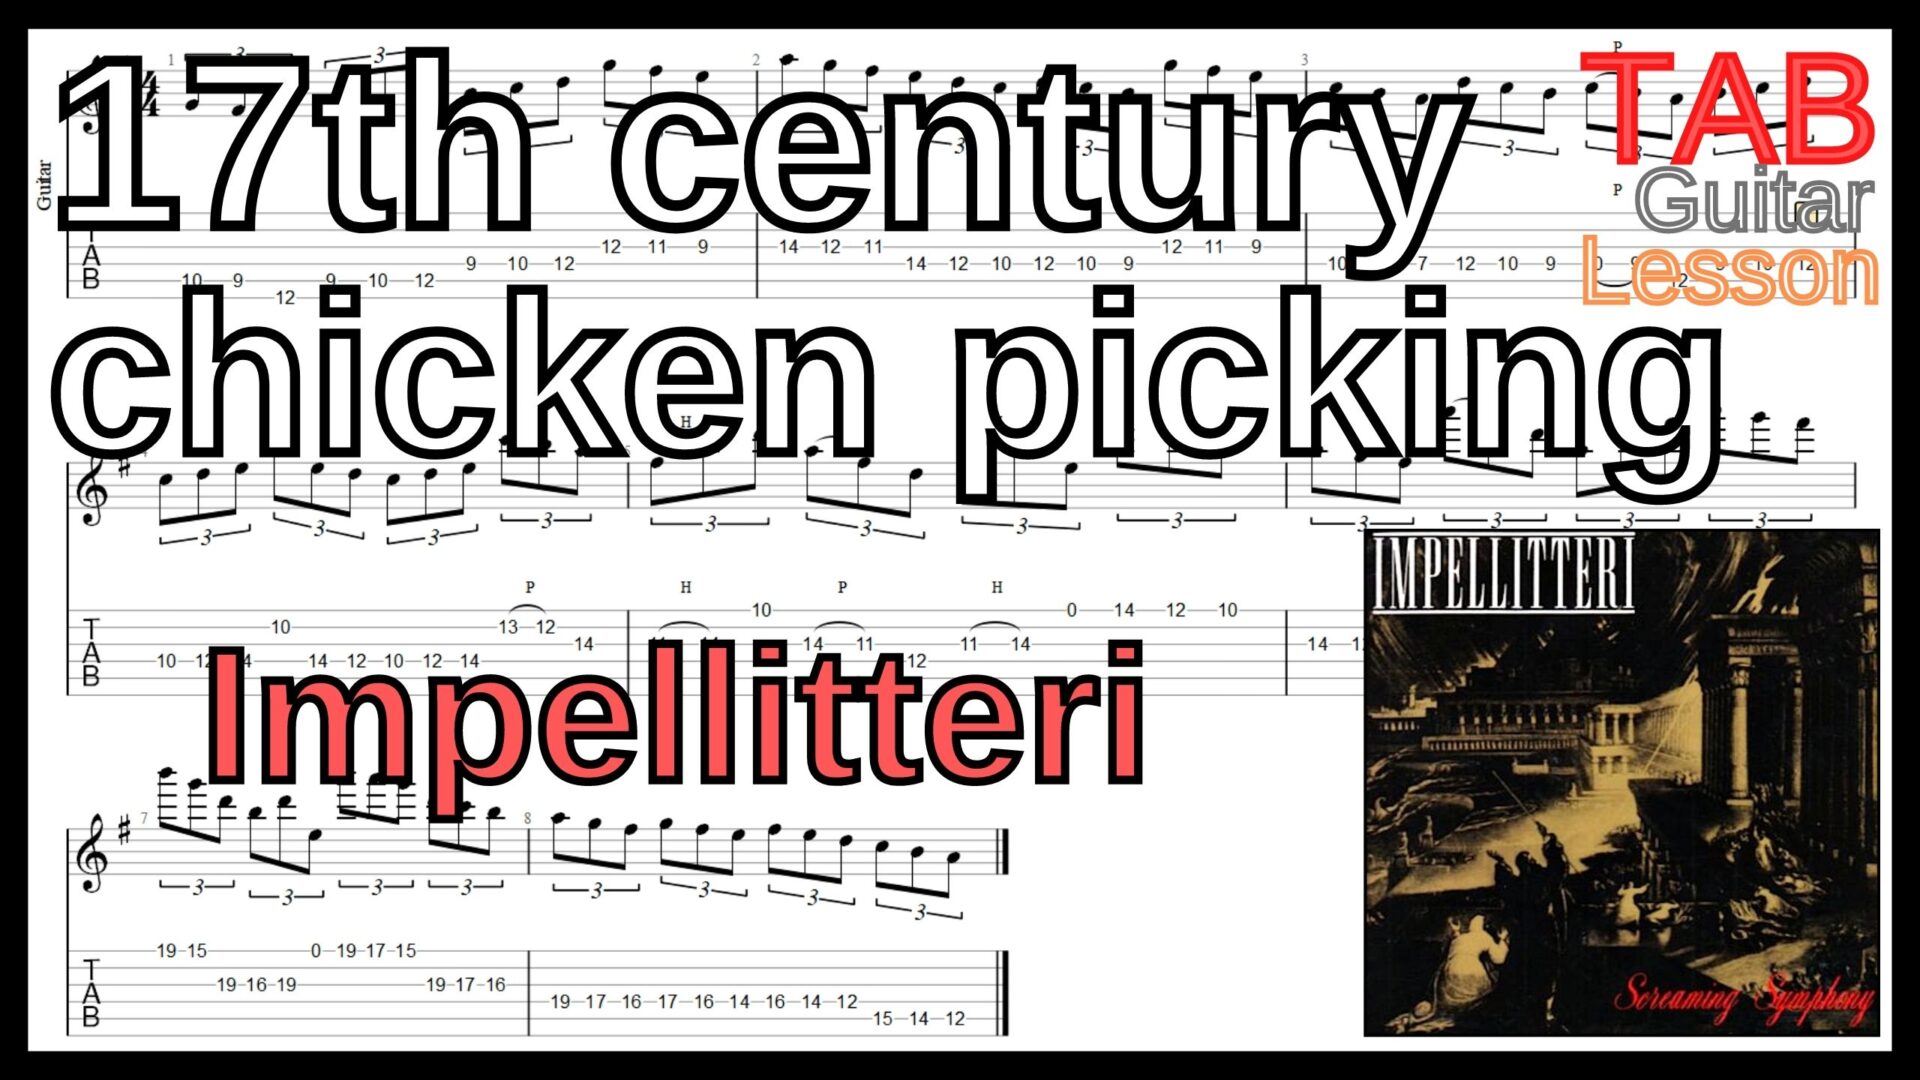 【ギターのピッキング上達練習】17th century chicken picking / Impellitteri Guitar Lesson クリス・インペリテリ ギター練習【Piking･ピッキング】ギターのピッキングが上手くなりたい人にオススメのフレーズ特集｡初心者さんにもオススメ！